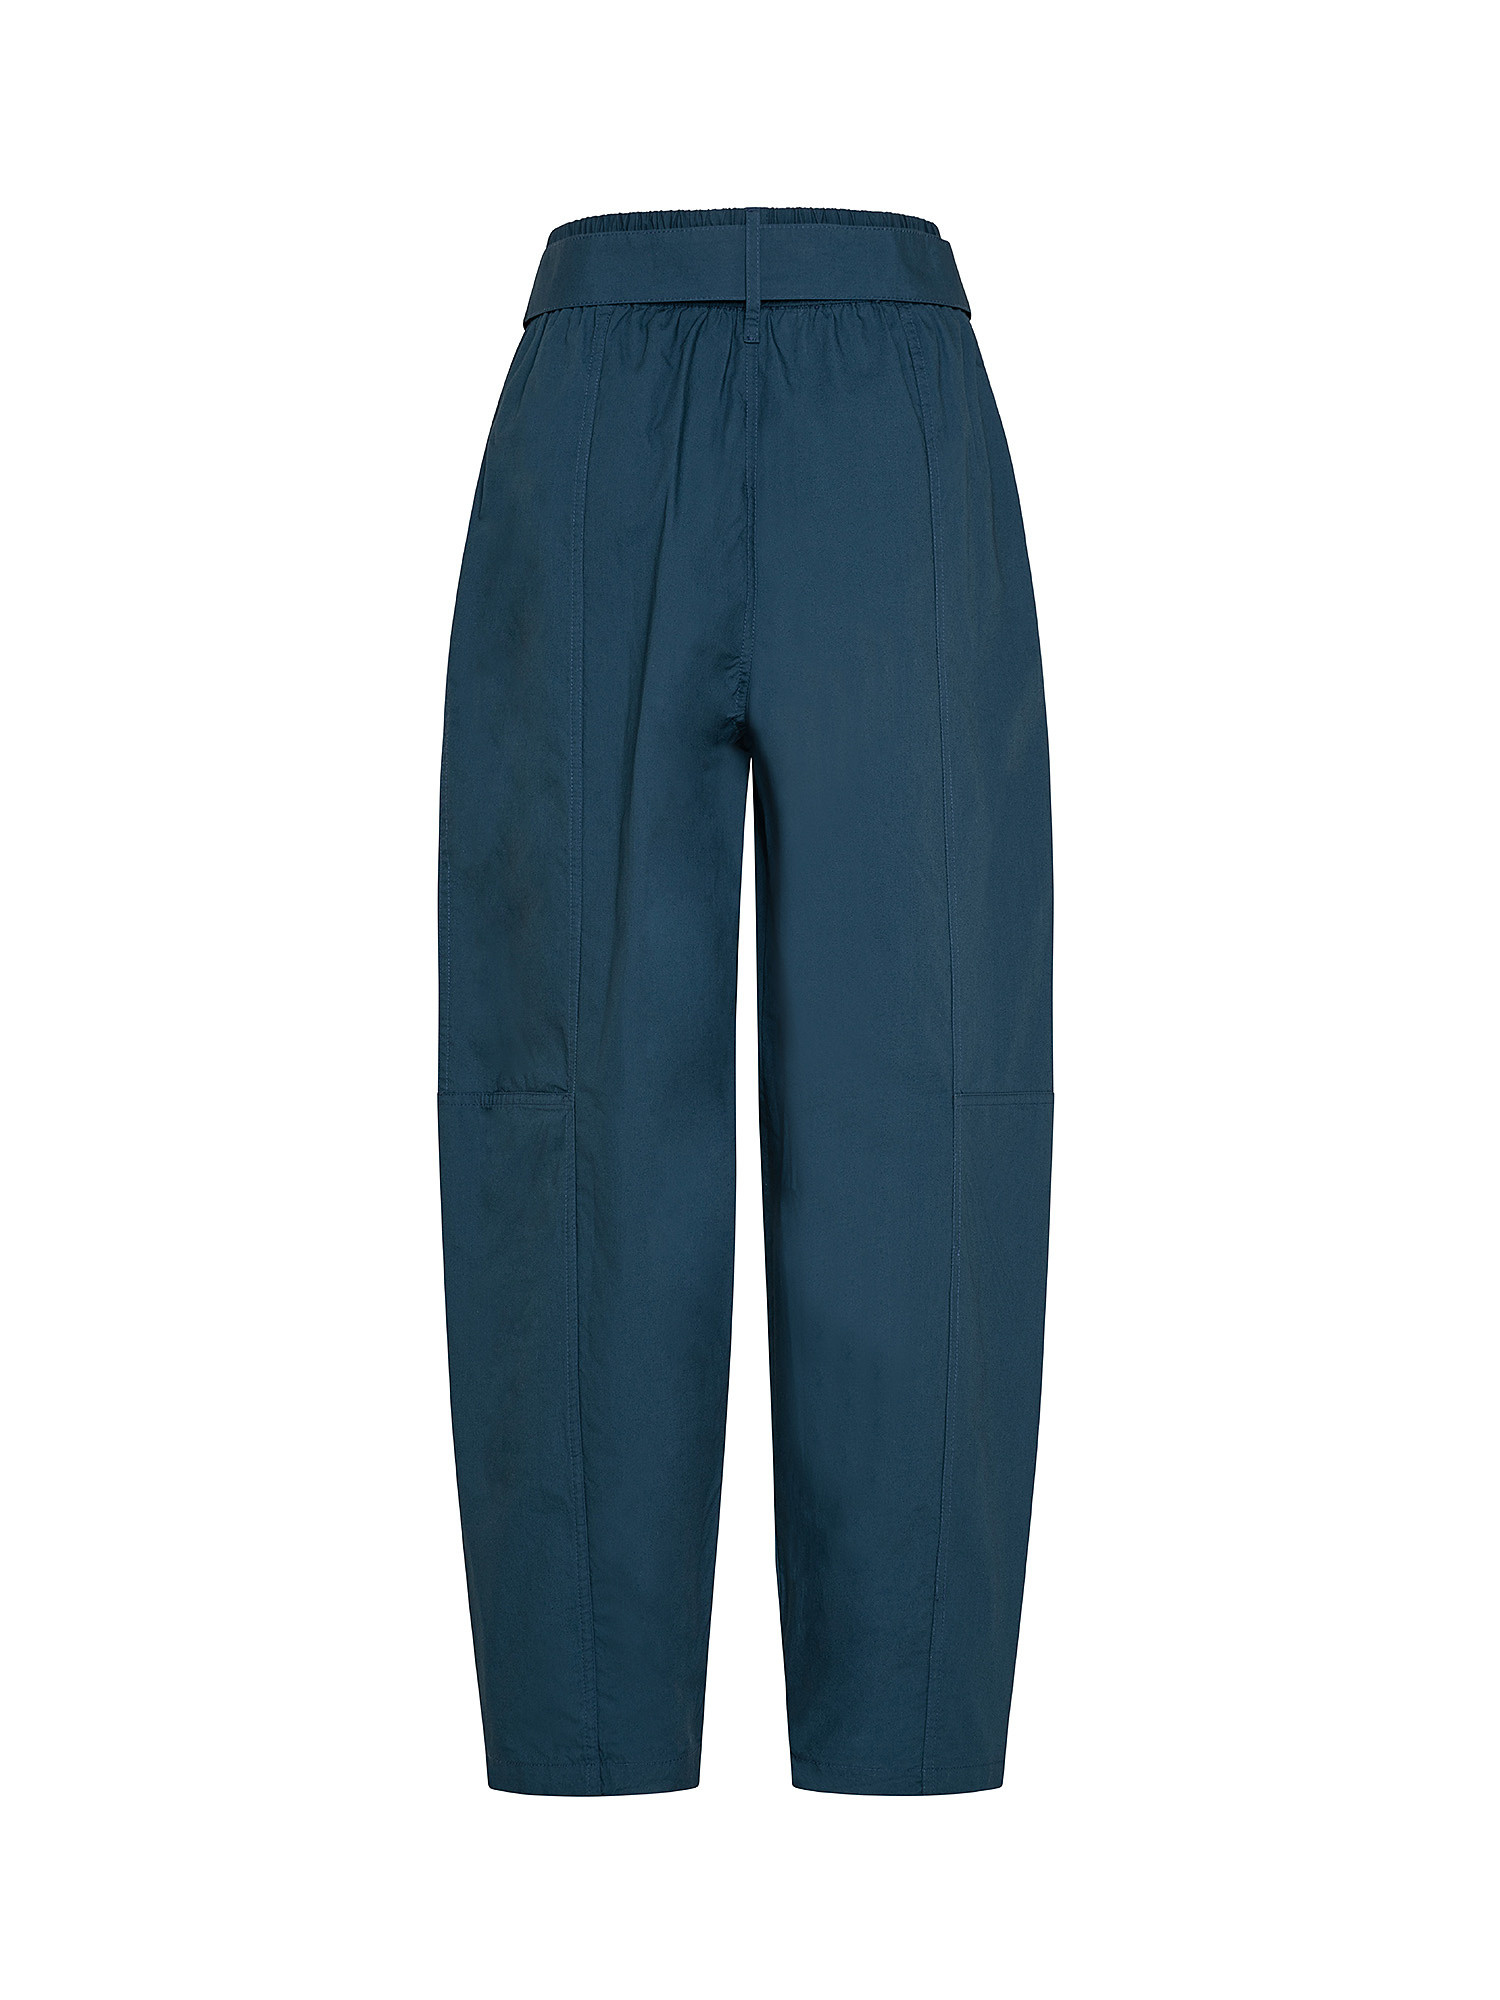 Pantalone, Blu, large